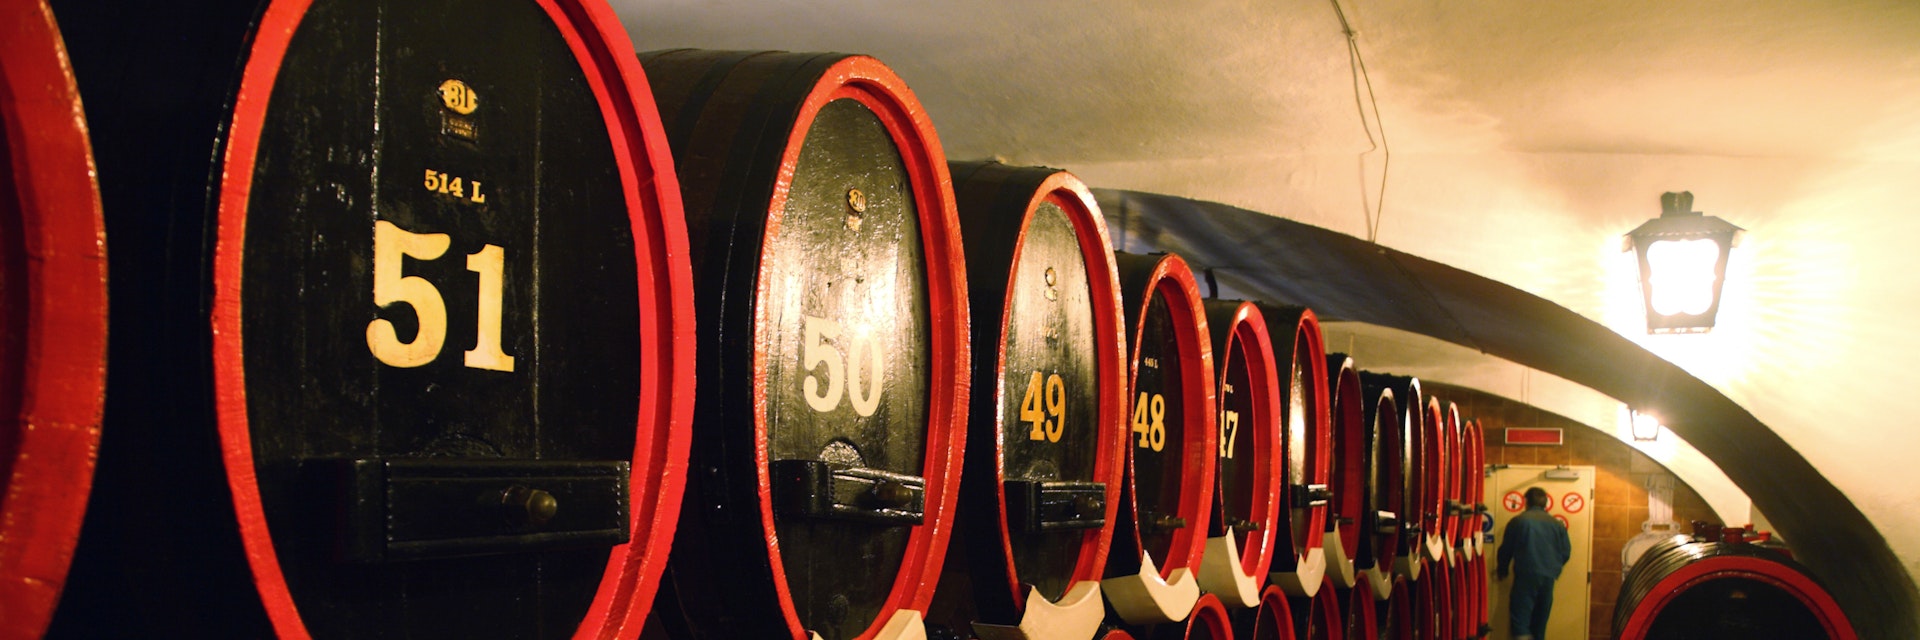 Barrels contain Becherovka bitters in cellar of Becherovka Museum, Karlovy Vary, Czech Republic